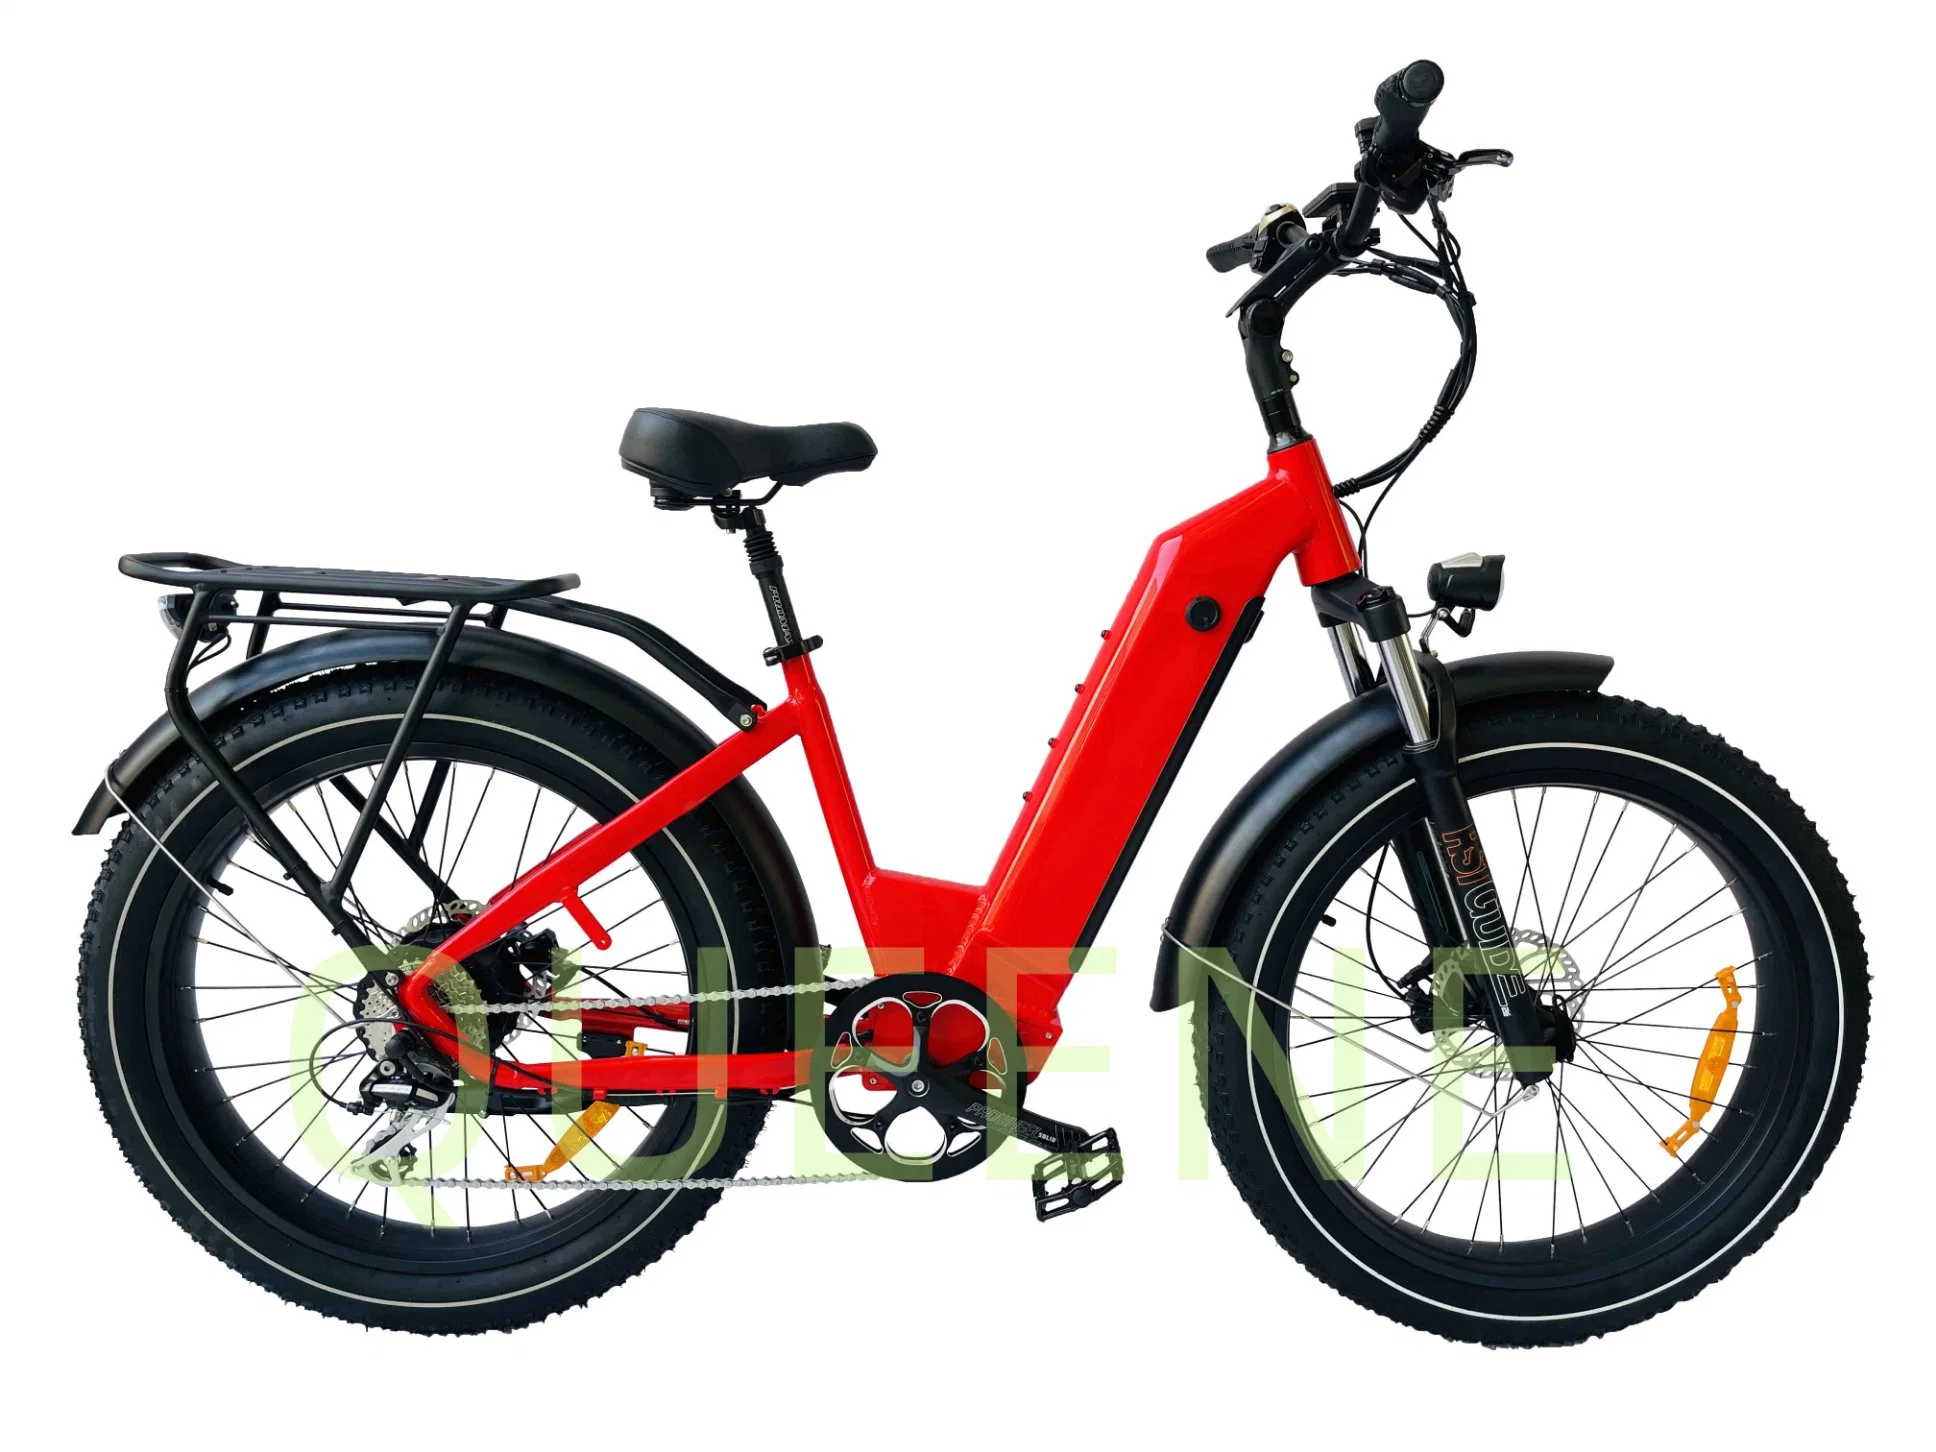 Queene/Carretera de la ciudad de 1000W 48V de los neumáticos de grasa la suciedad e bicicleta con suspensión completa Ebike Vintage Bicicleta eléctrica